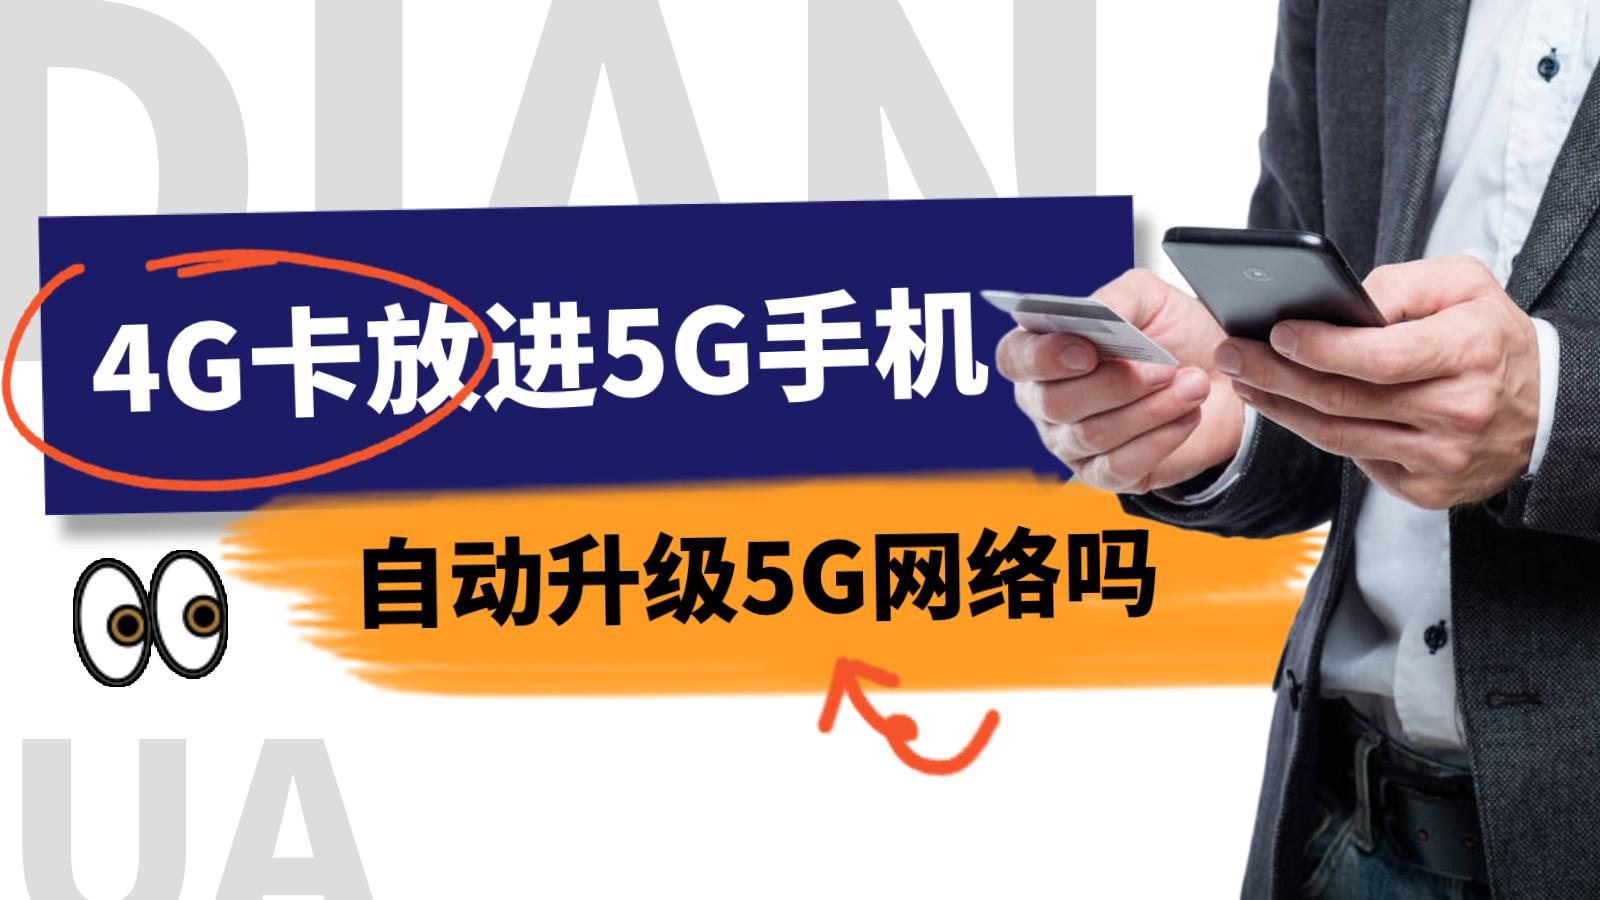 5g手機可以用4g的手機卡嗎 4G卡會自動成5G網絡嗎